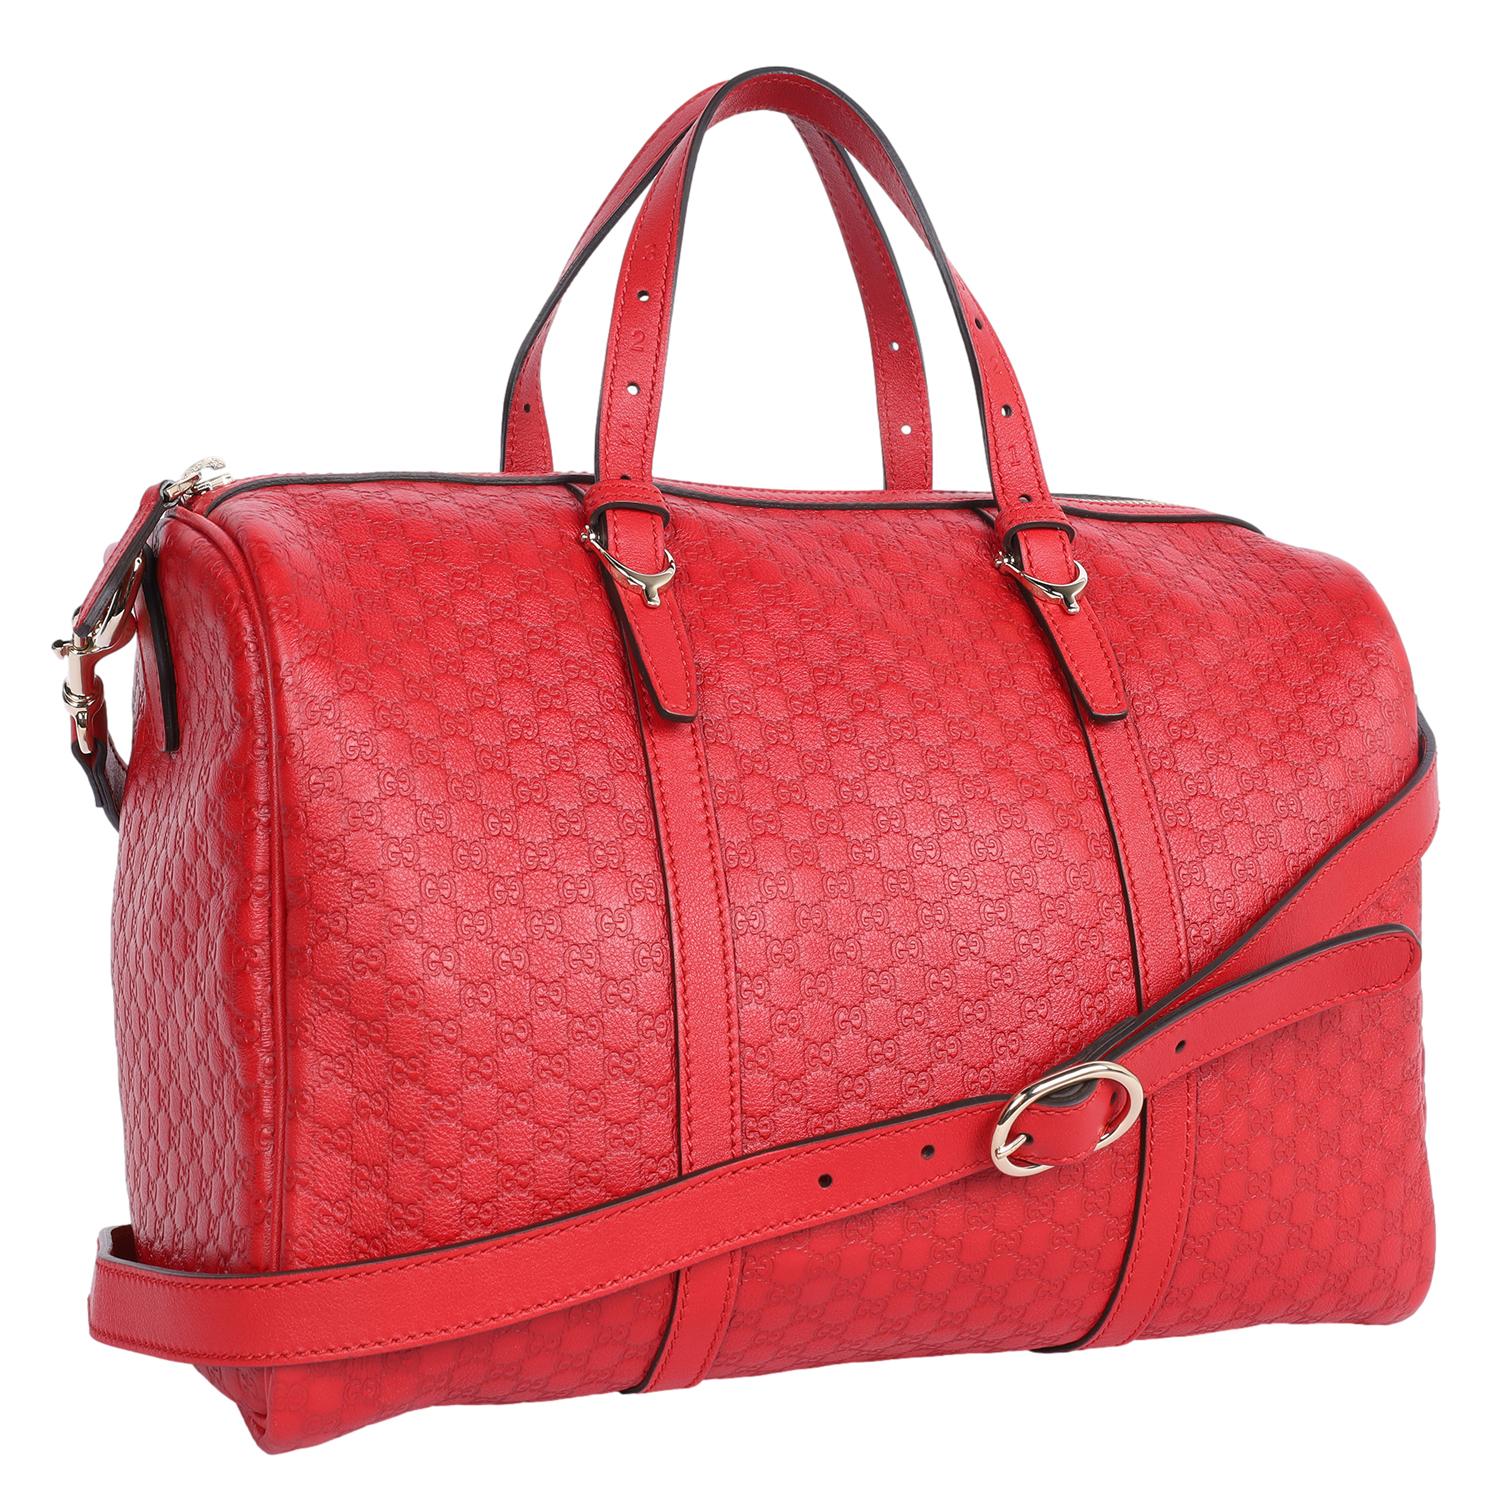 Authentische, gebrauchte Gucci GG Guccissima Medium Joy Signature Bag in Rot. Diese elegante Tasche besteht aus rotem Gucci-Leder mit Monogrammprägung. Die Tasche verfügt über gerollte Ledergriffe, einen optionalen Schulterriemen, goldene Beschläge,